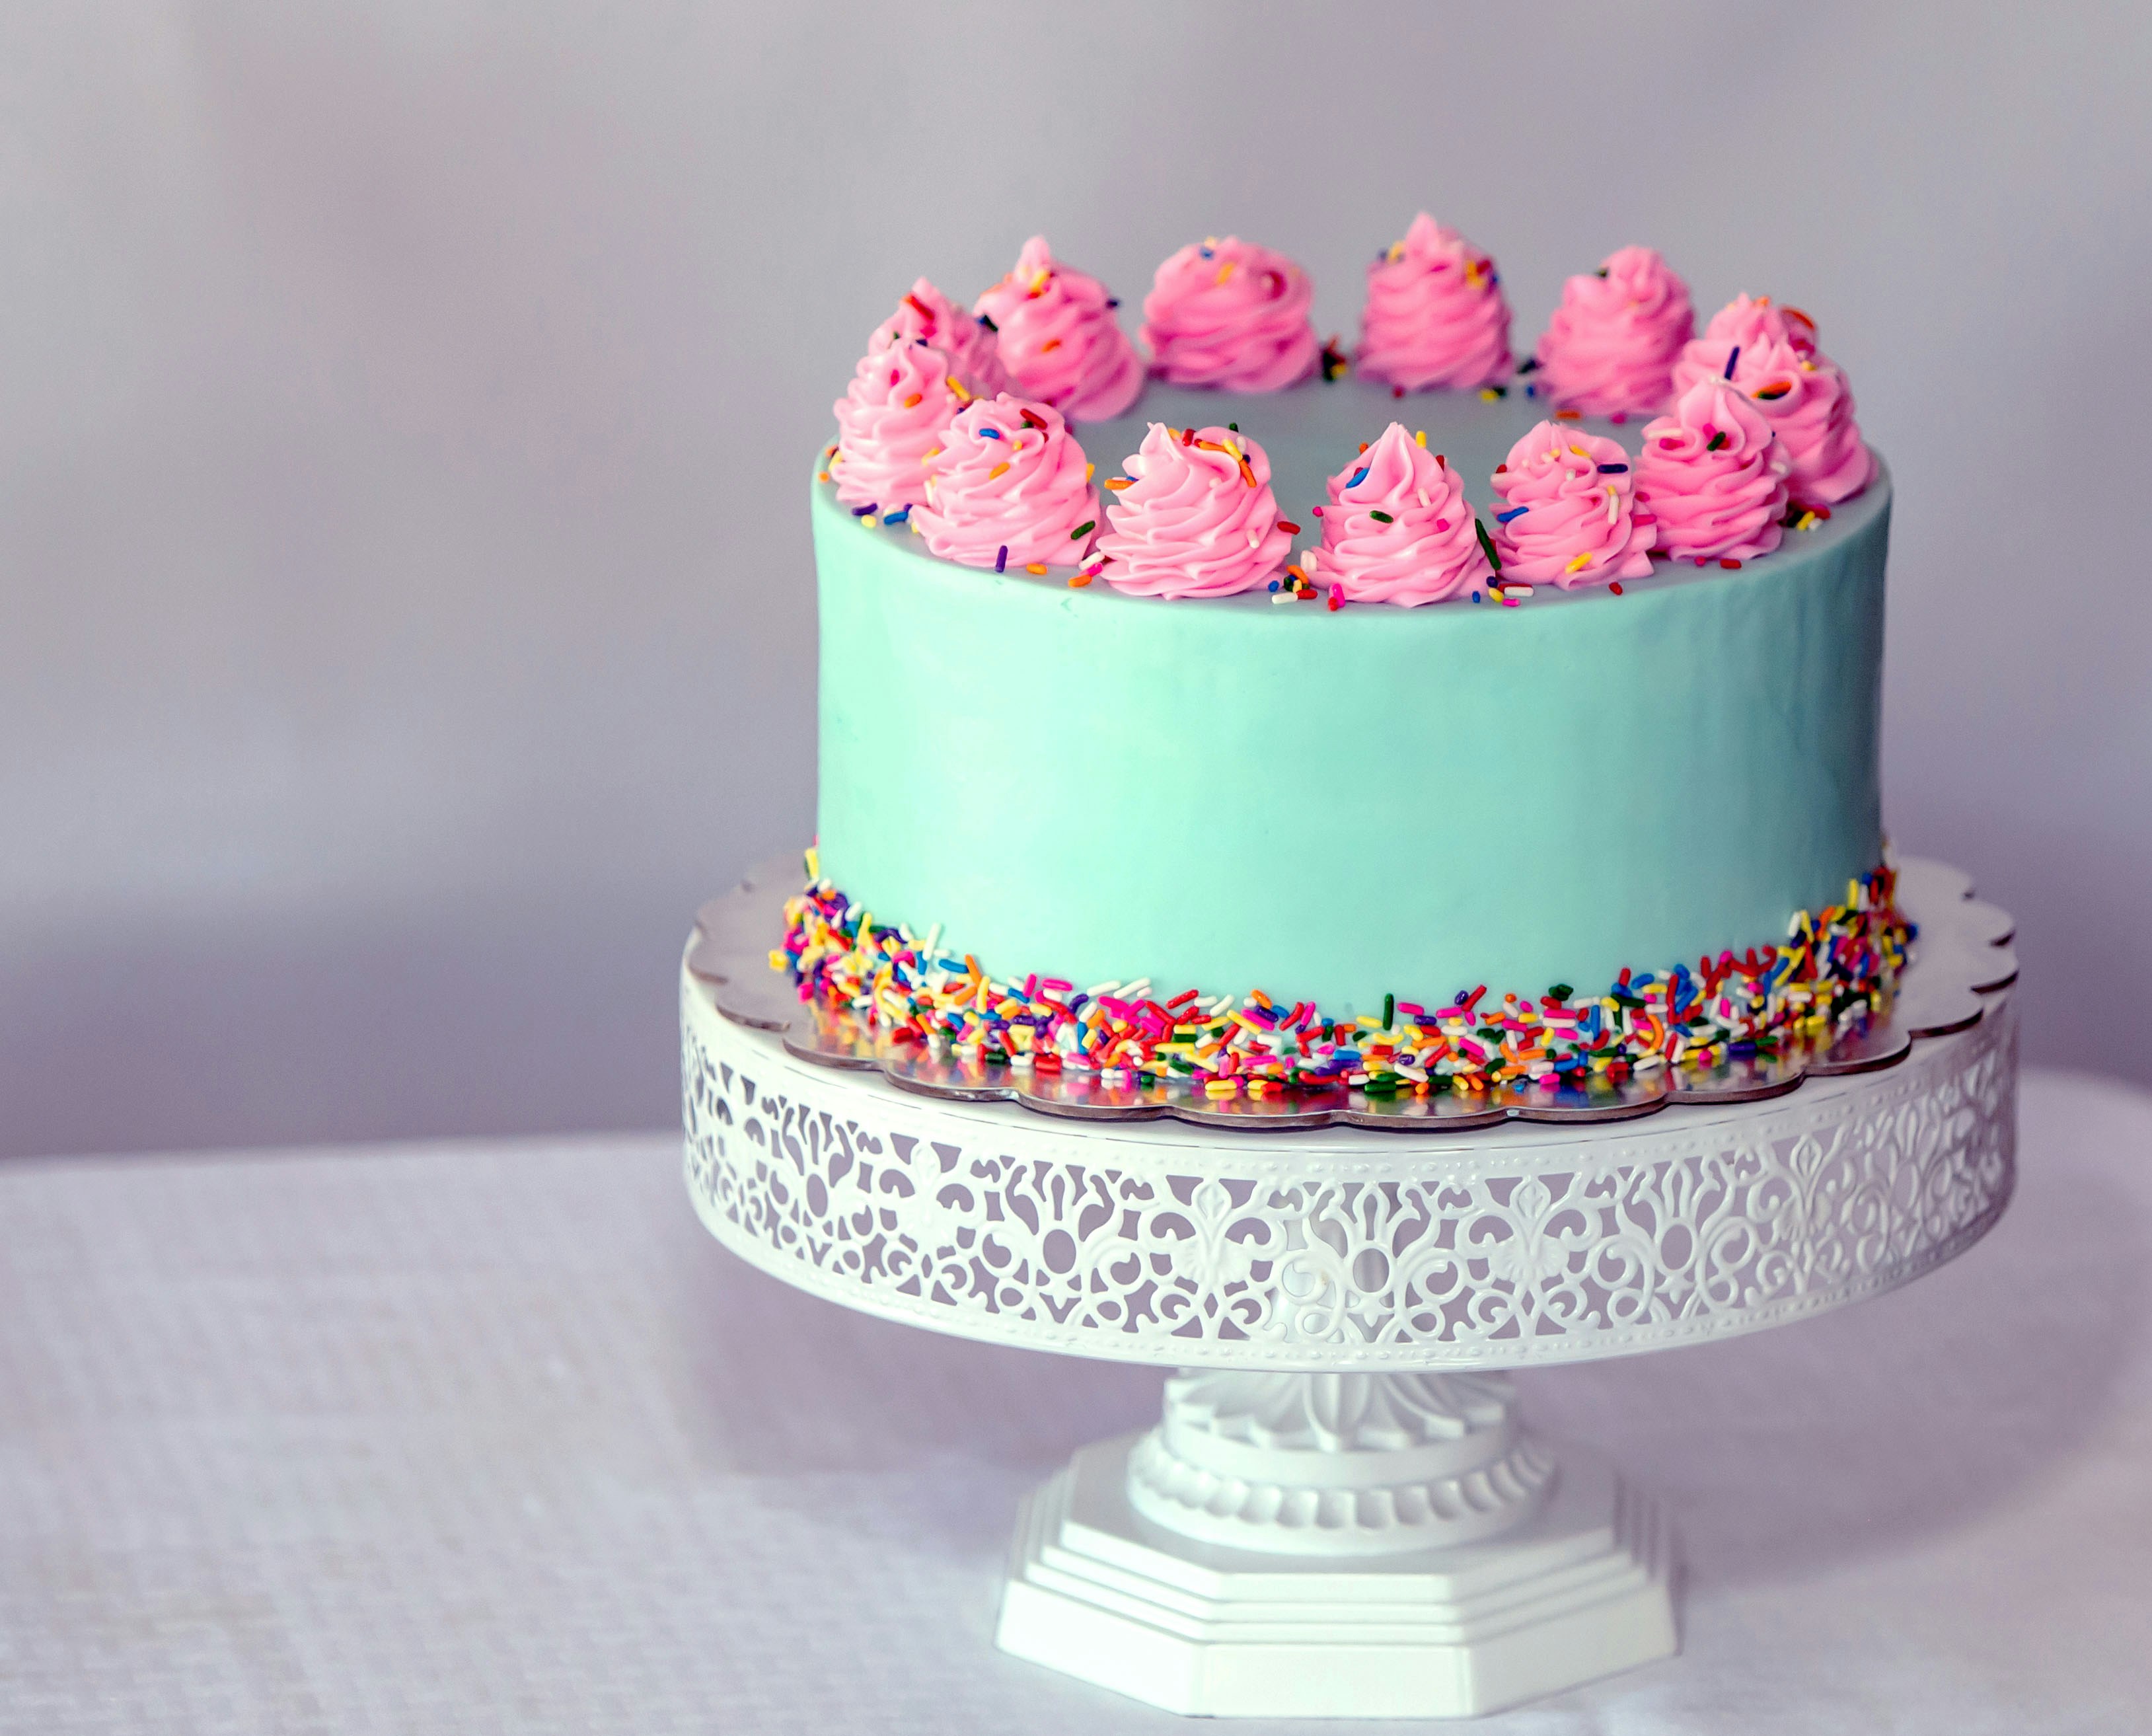 Najpopularniejsze dekoracje do tortów – Blog thecakes